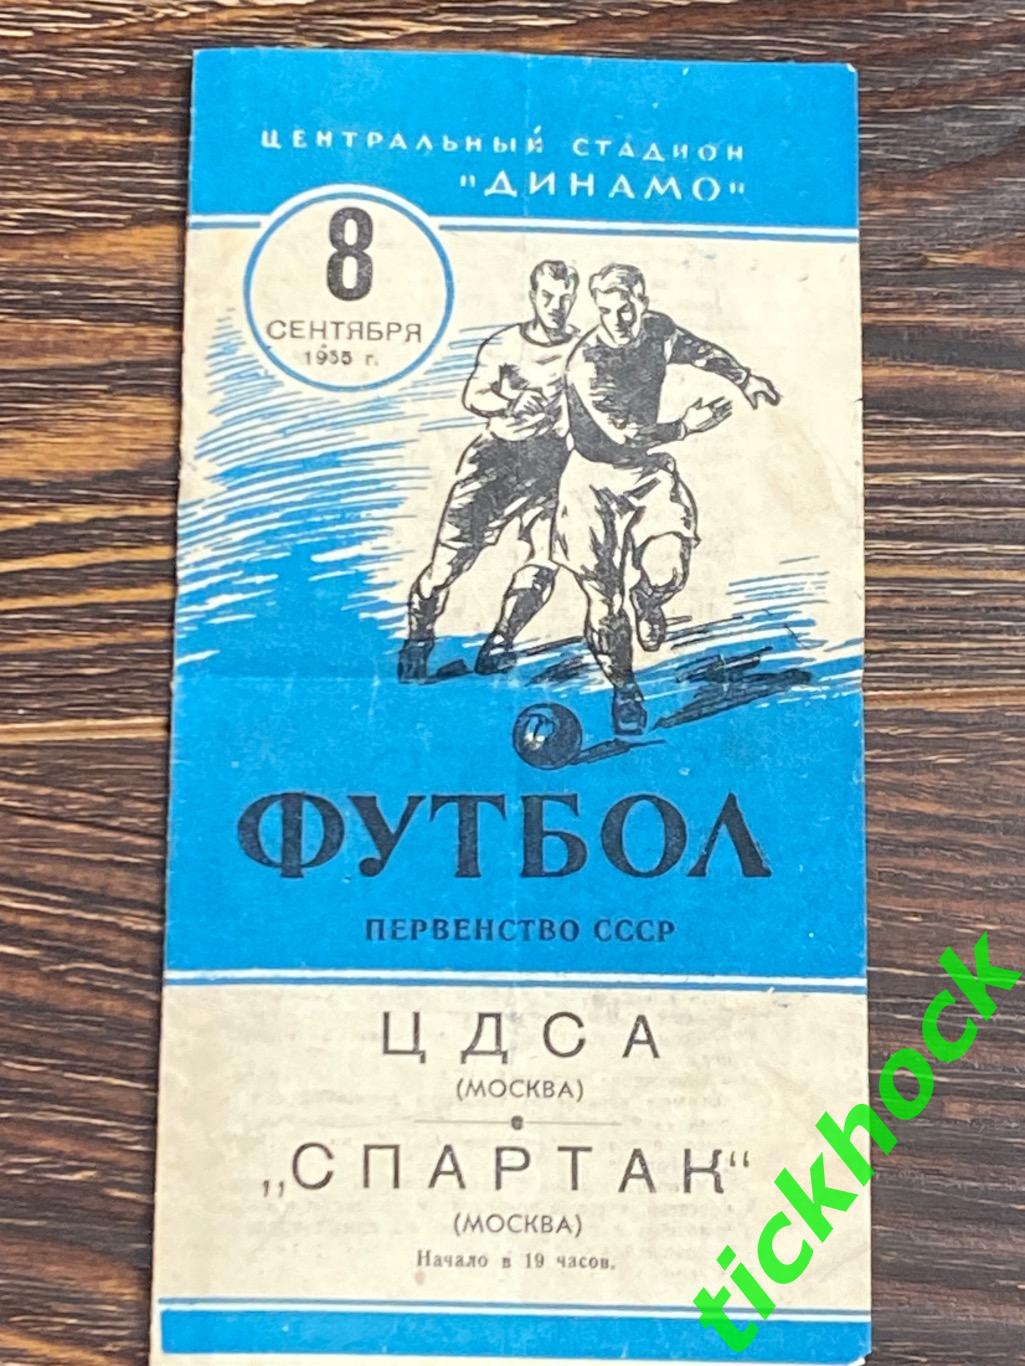 ЦДСА / ЦСКА Москва -Спартак(Москва) 08.09.1955-- SY